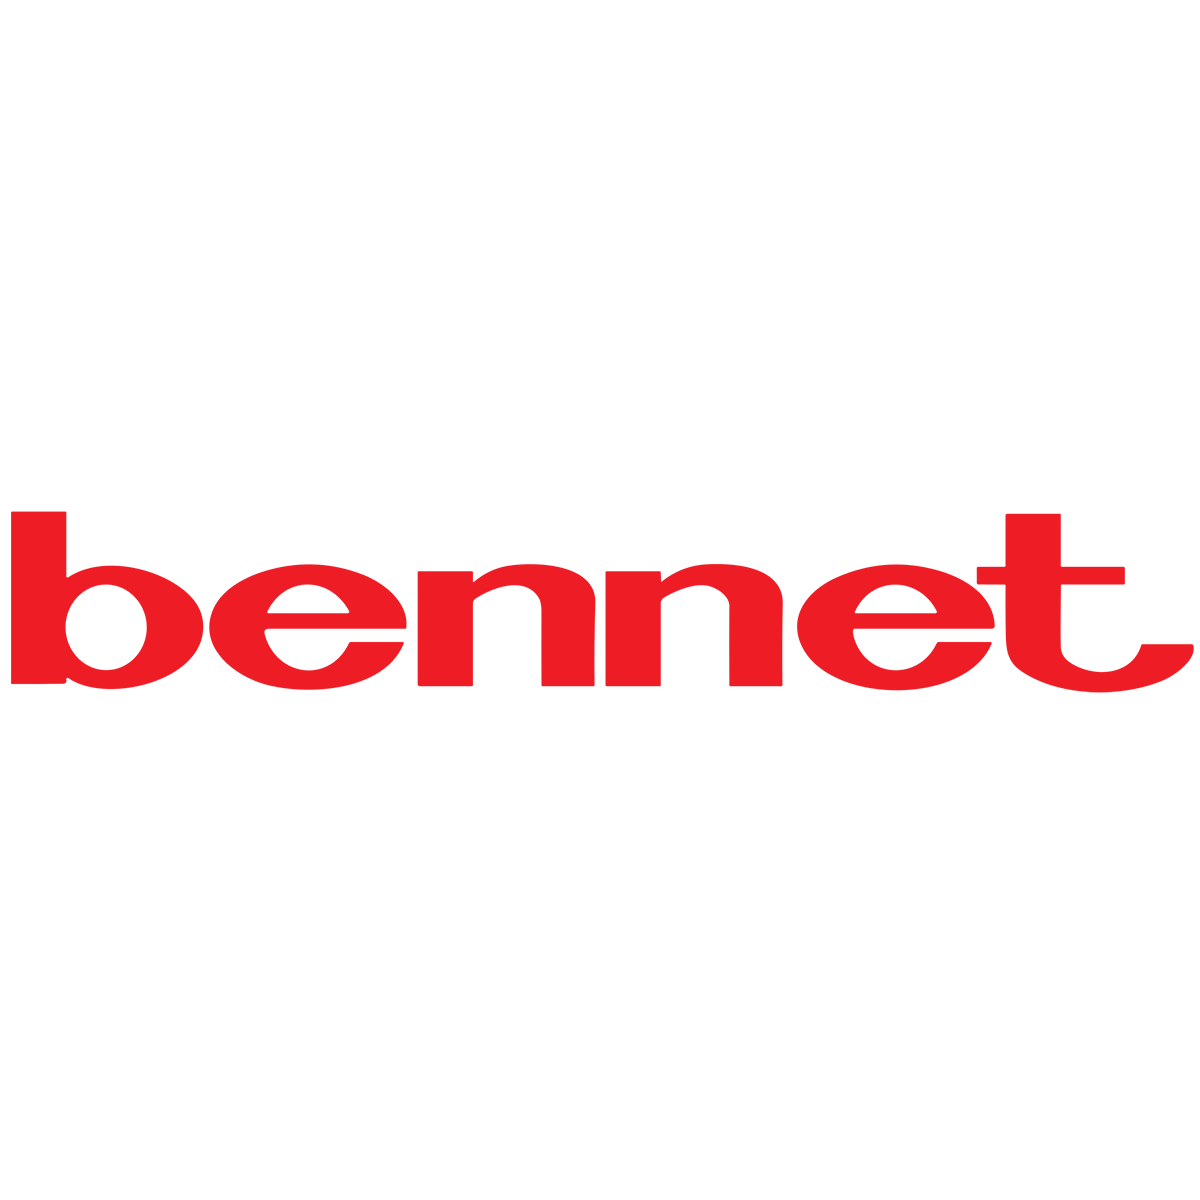 Logo Bennet